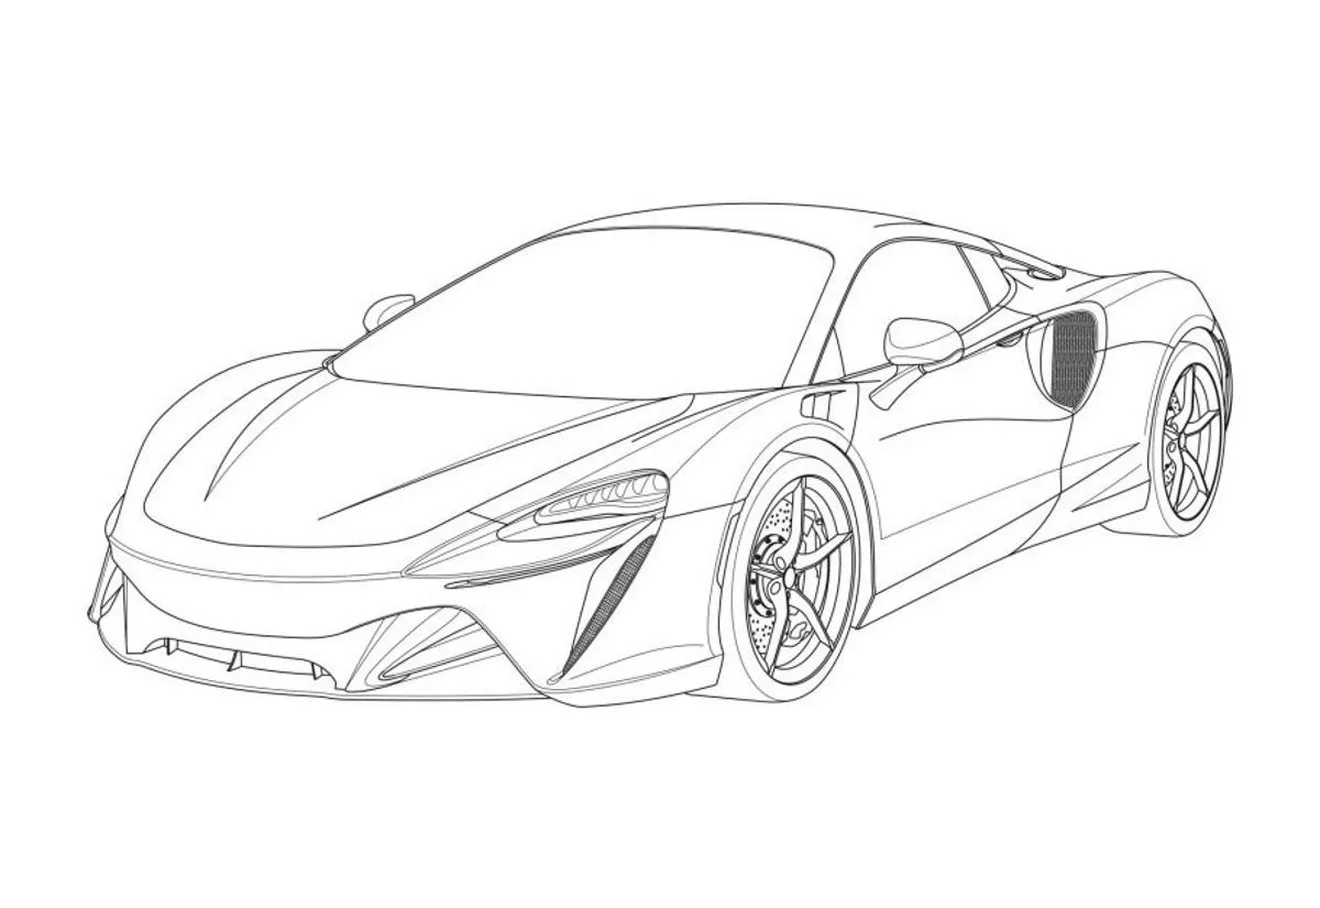 El nuevo McLaren V6 híbrido filtrado al completo gracias a sus patentes